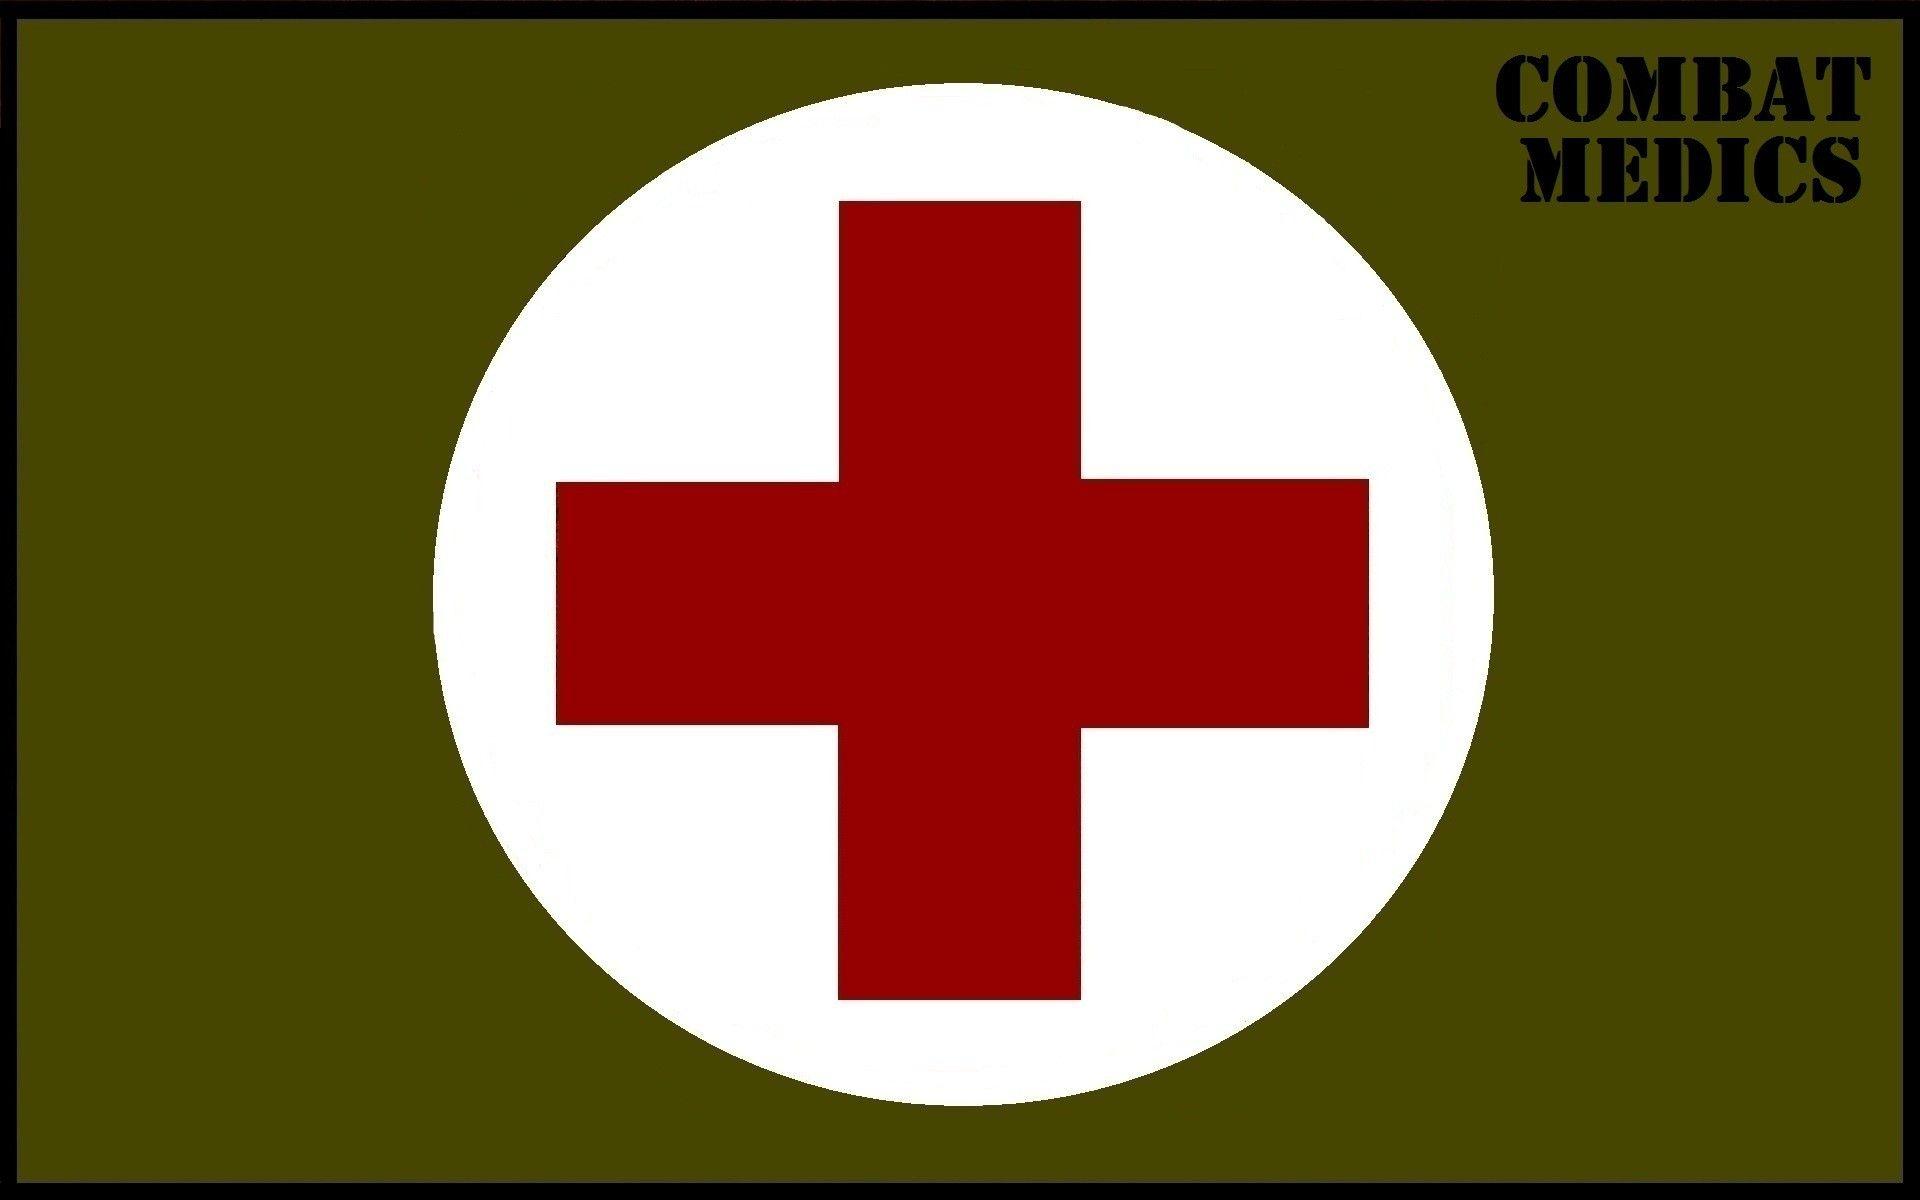 Download the Combat Medics Wallpaper, Combat Medics iPhone Wallpaper